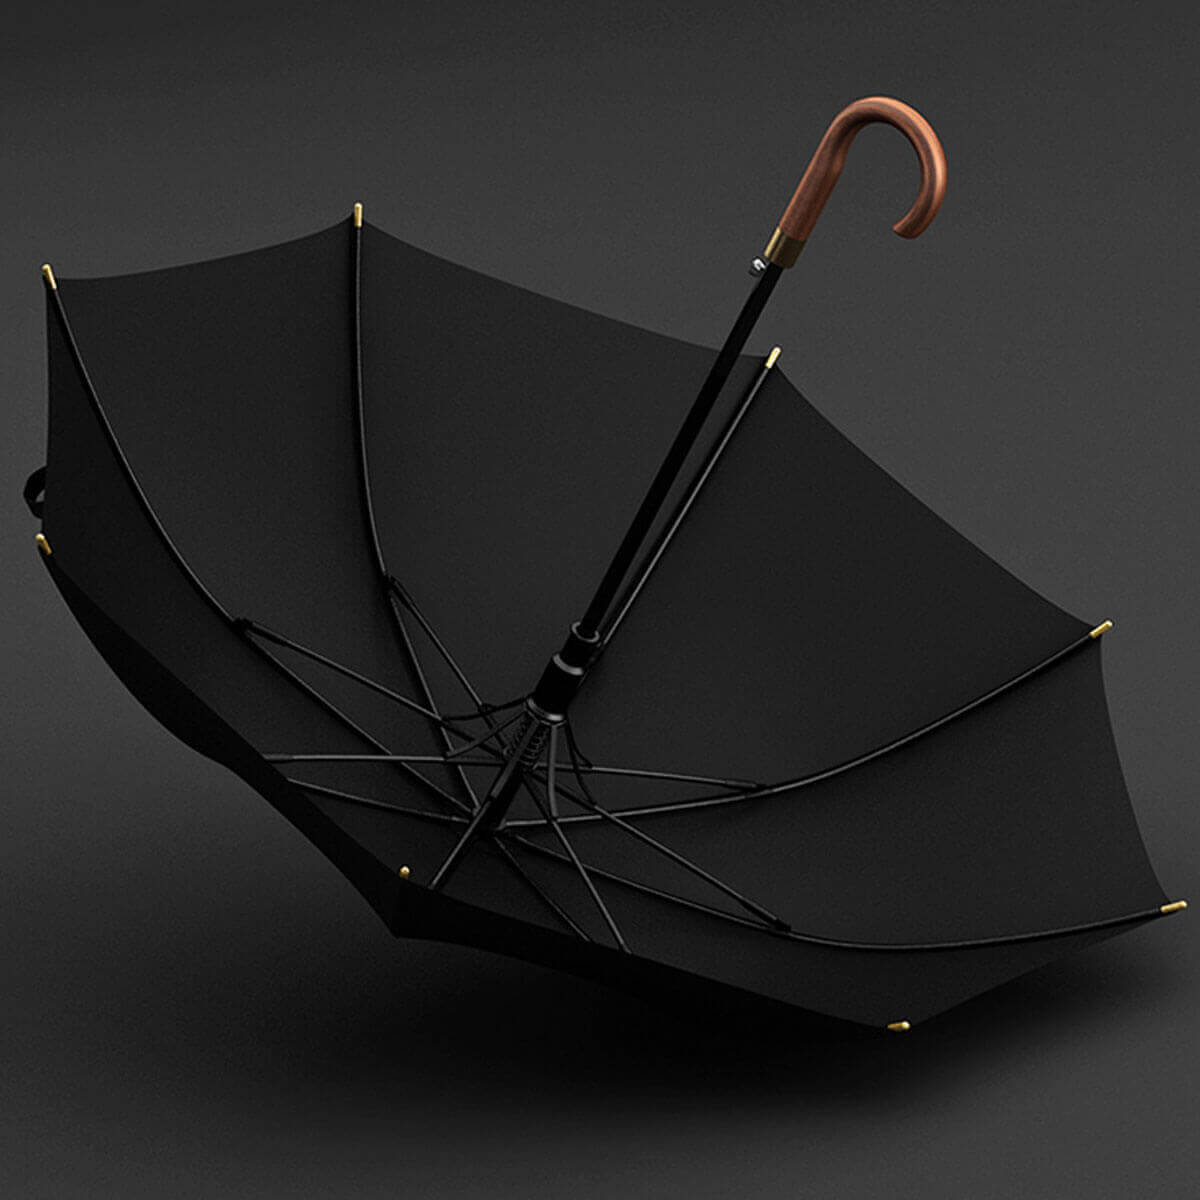 Premium wooden umbrella in sophisticated color